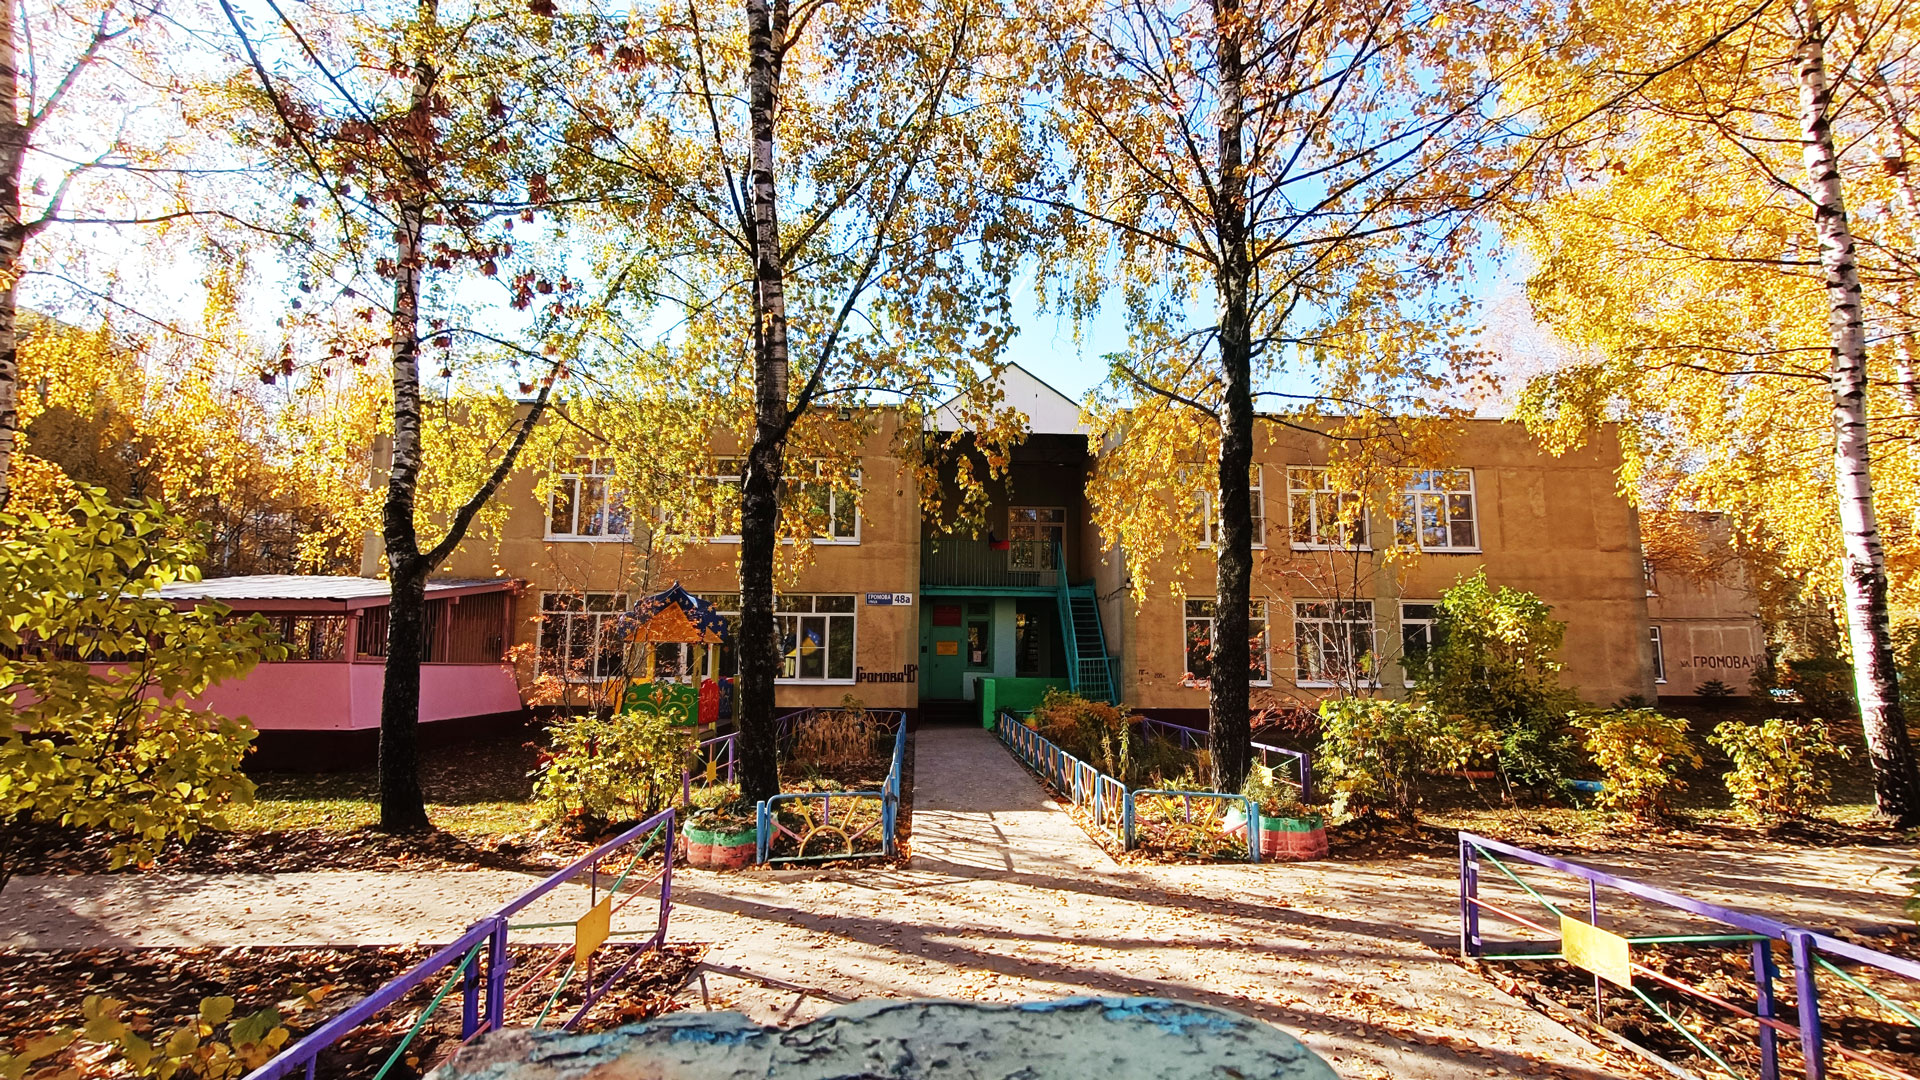 Детский сад 54 Ярославль: общий вид здания.